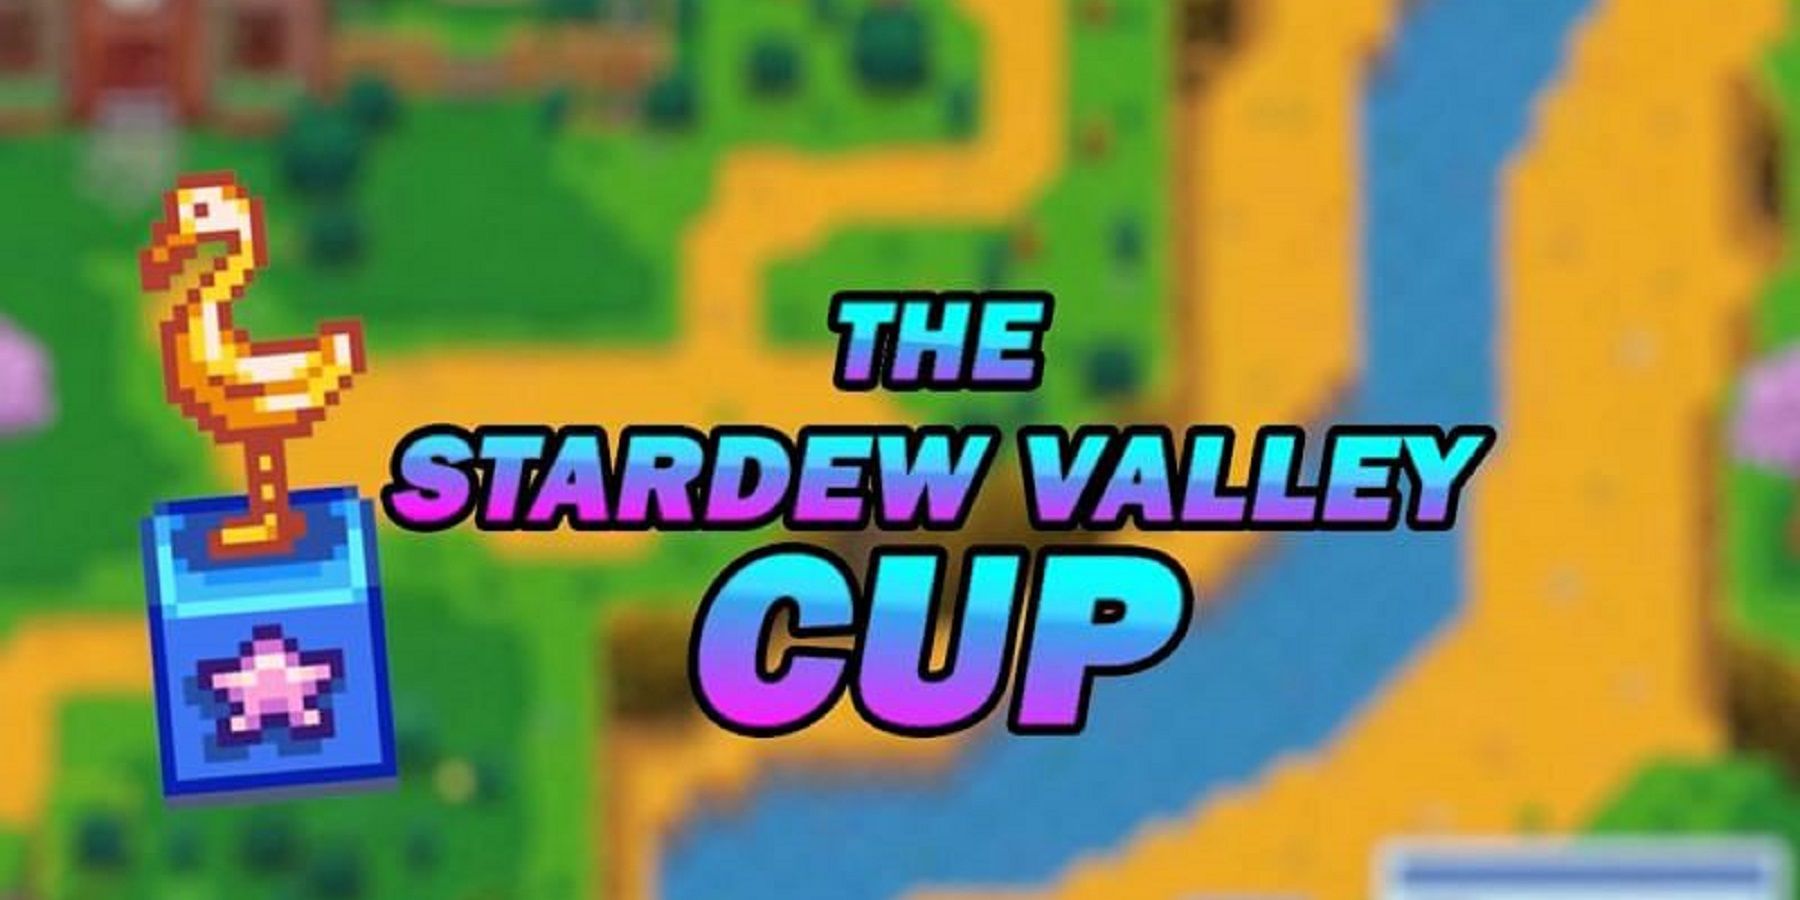 1. oficiálna kľúčová umelecká funkcia Stardew Valley Cup